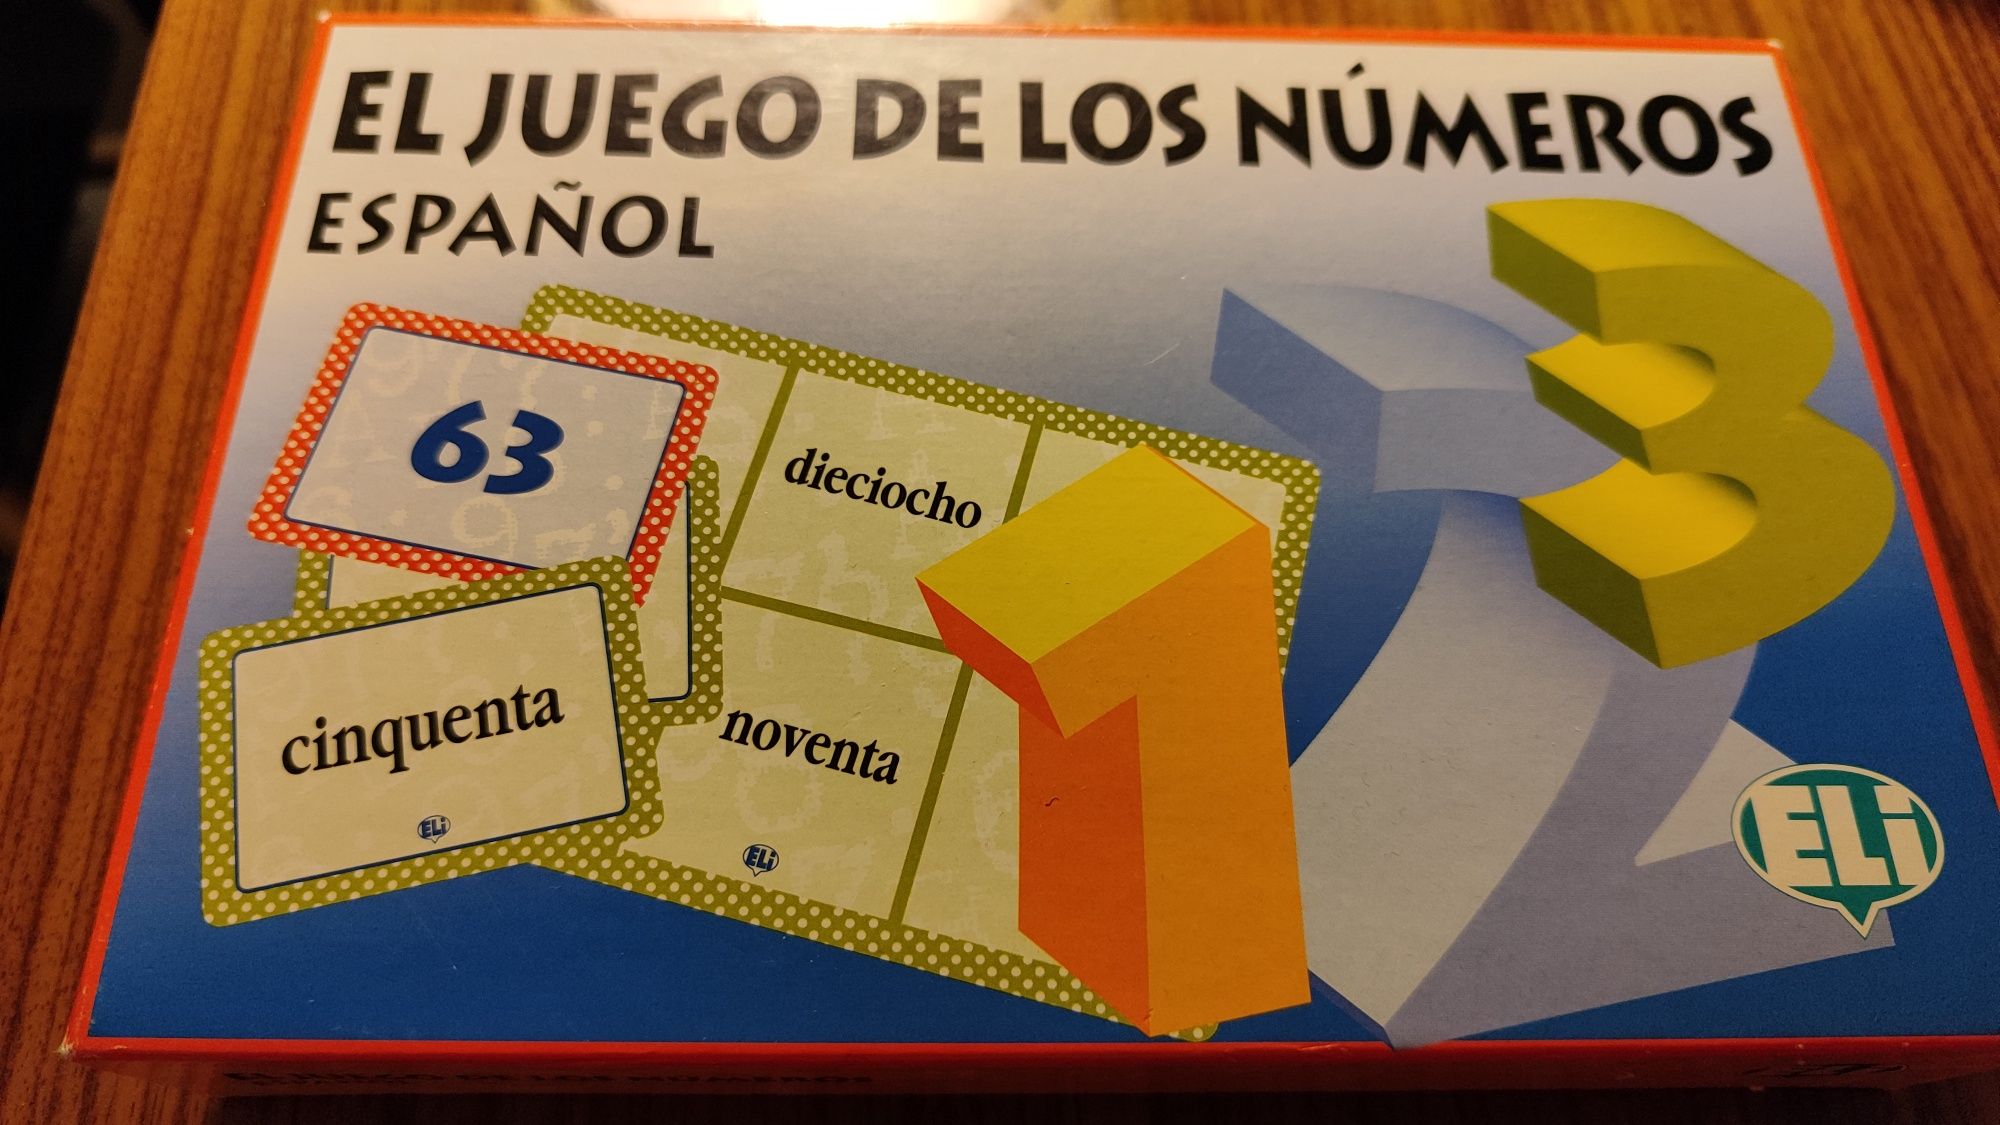 Gra El juego de los numeros Espanol